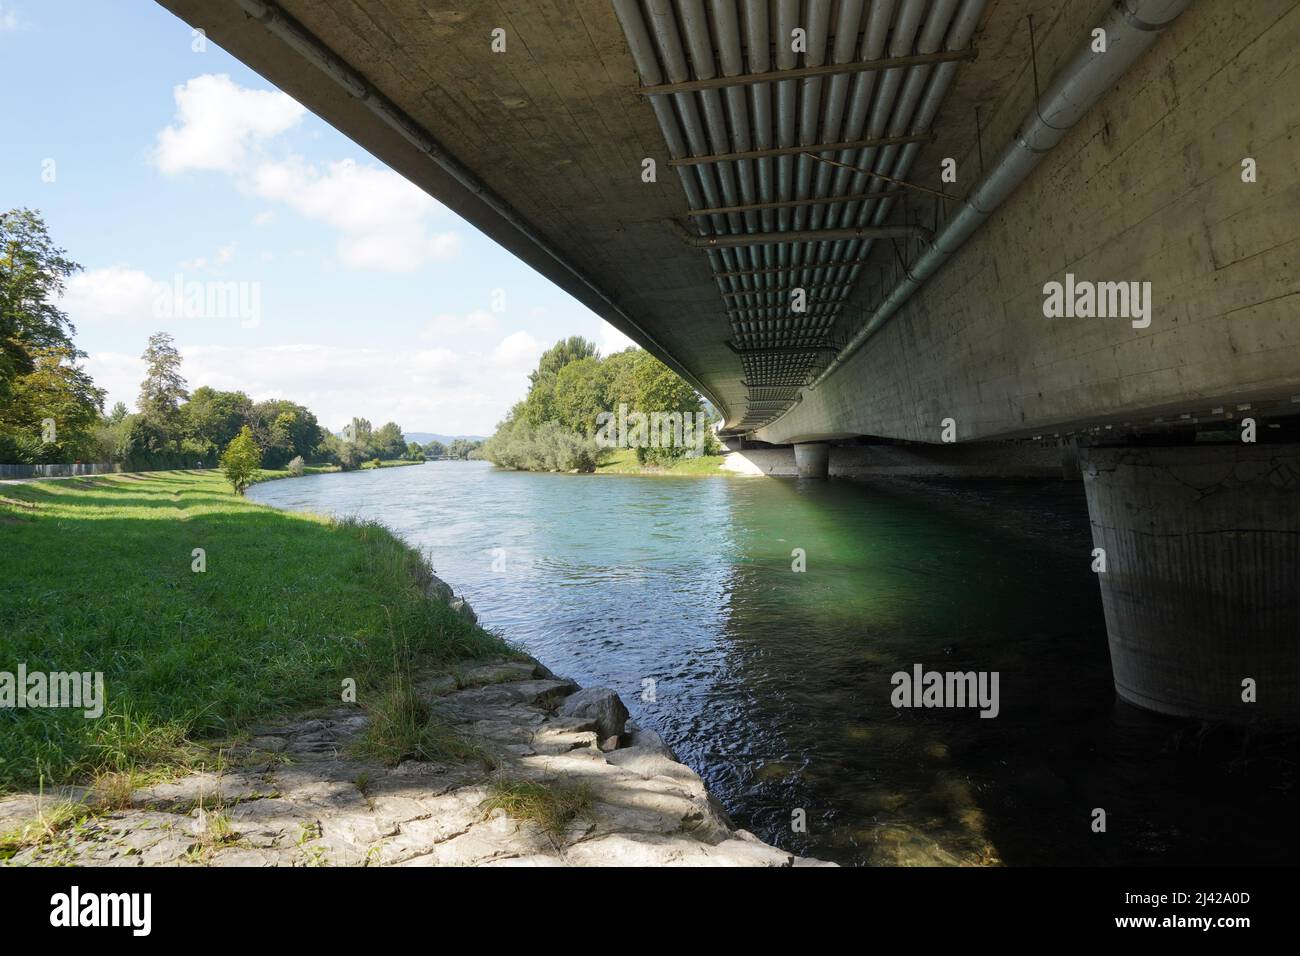 Pont de barrage sur le Limmat dans le canton de Zurich, Suisse. Vue à angle bas montrant les piliers de ciment plantés dans l'eau. Des tuyaux y sont attachés. Banque D'Images